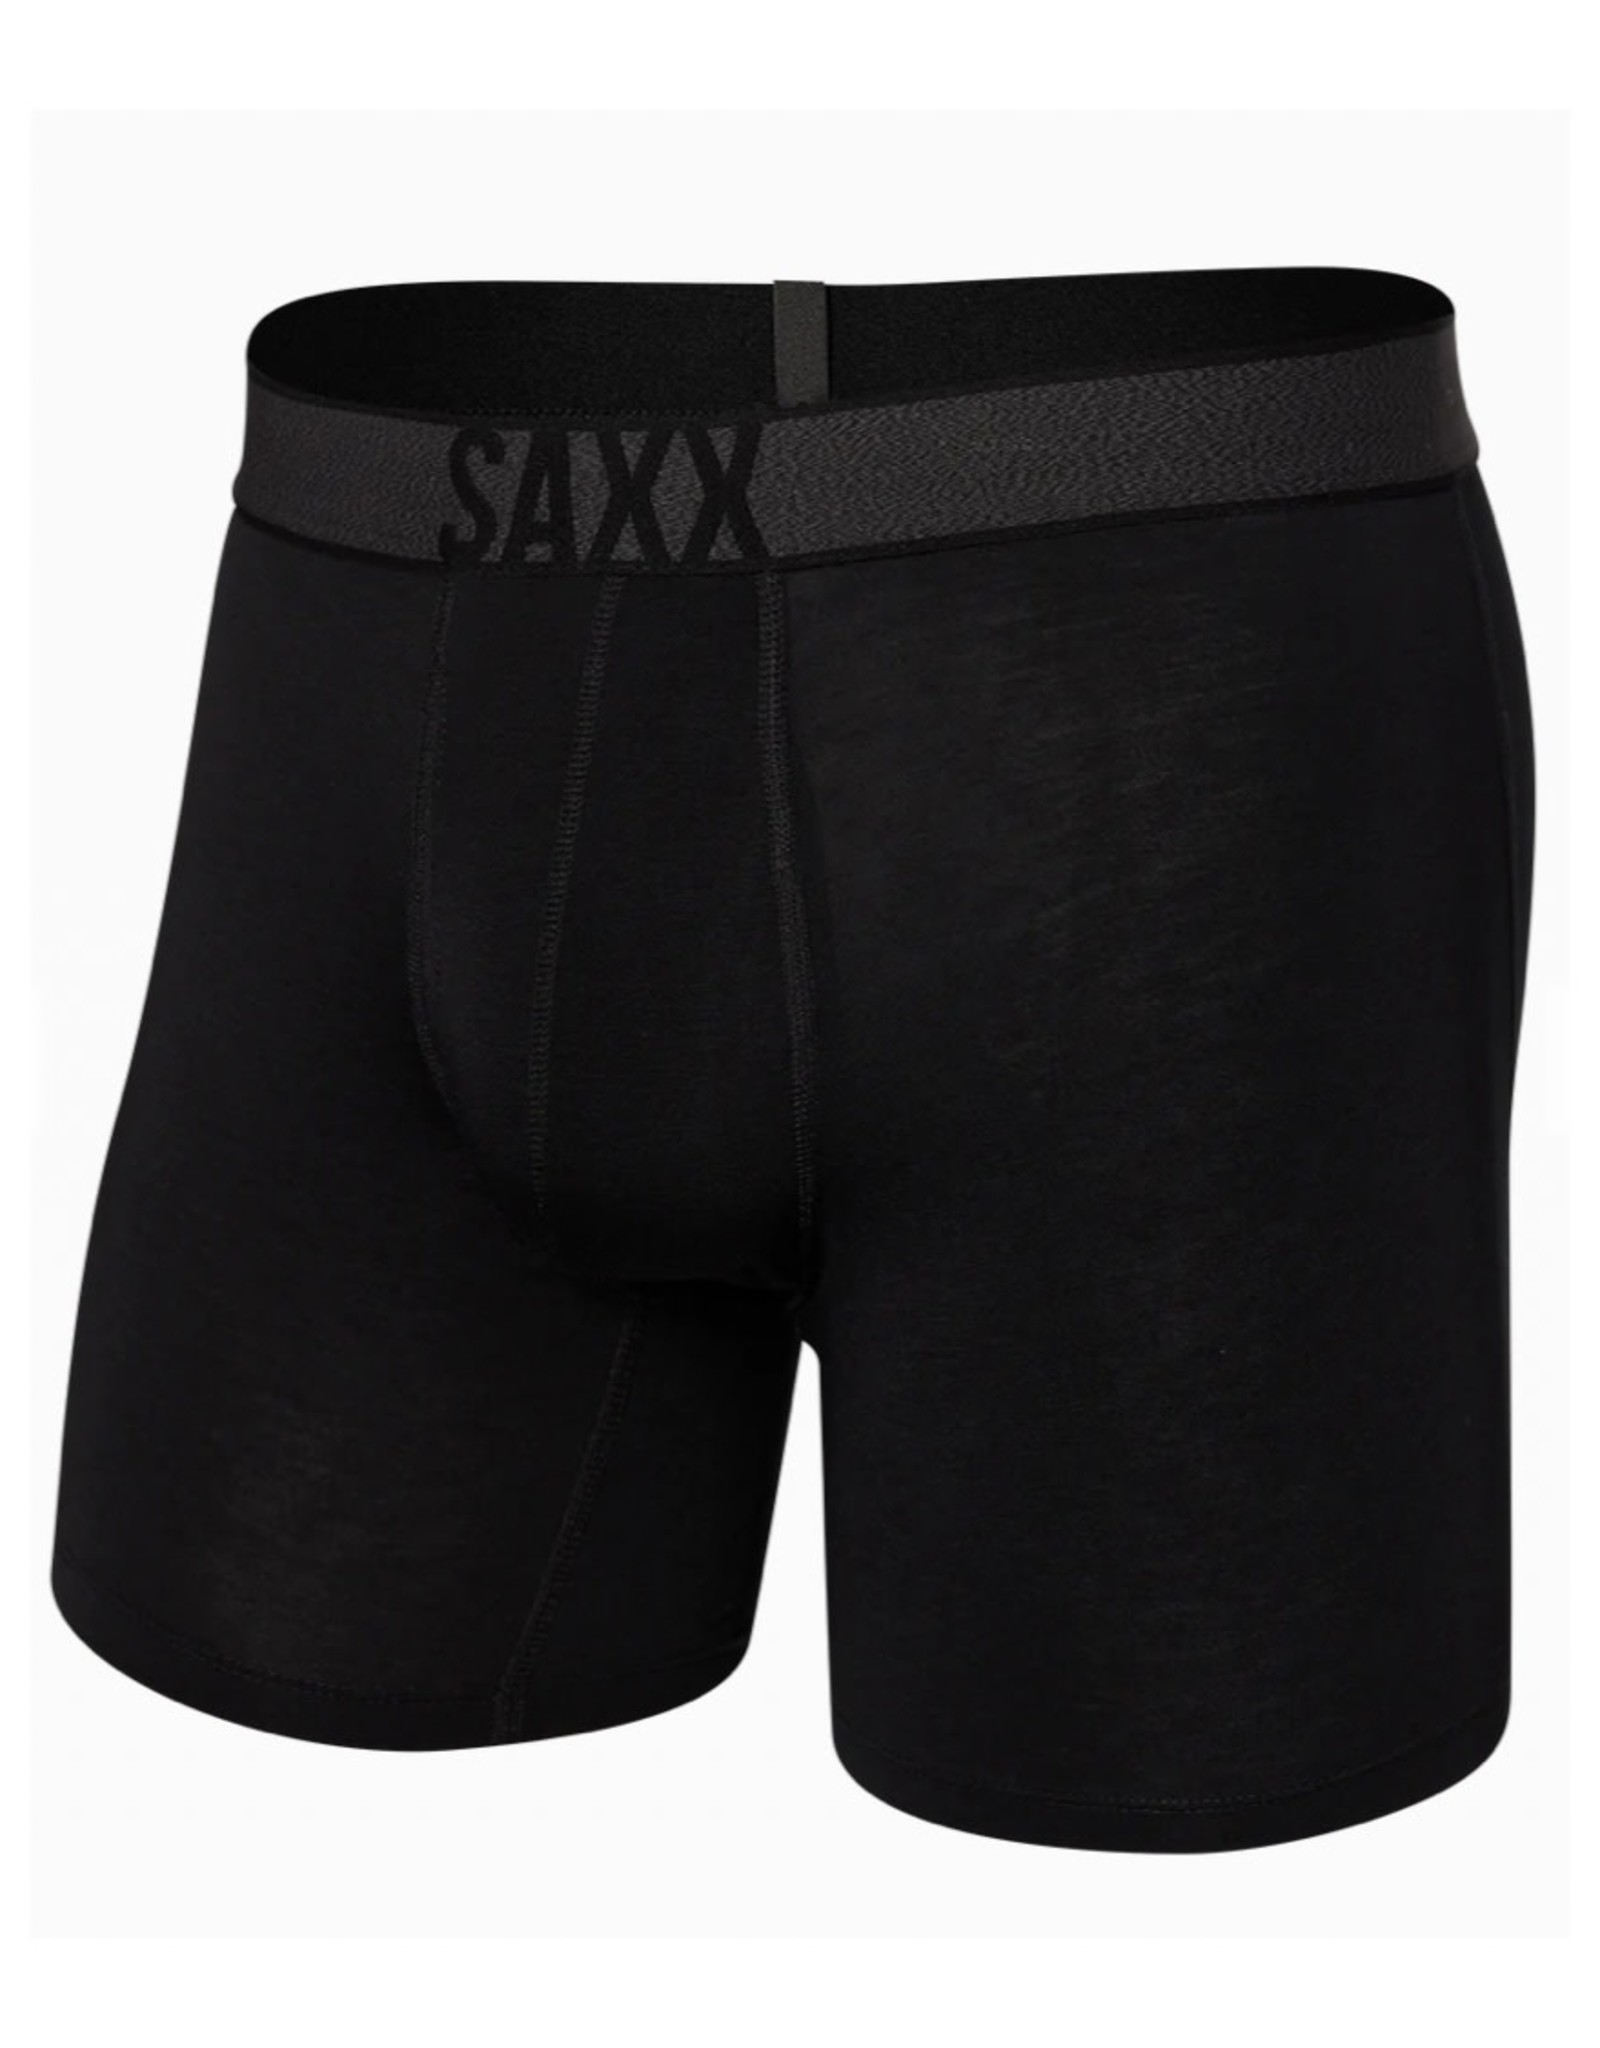 Saxx Saxx Roast Master Mid-Weight Boxer Brief Men’s